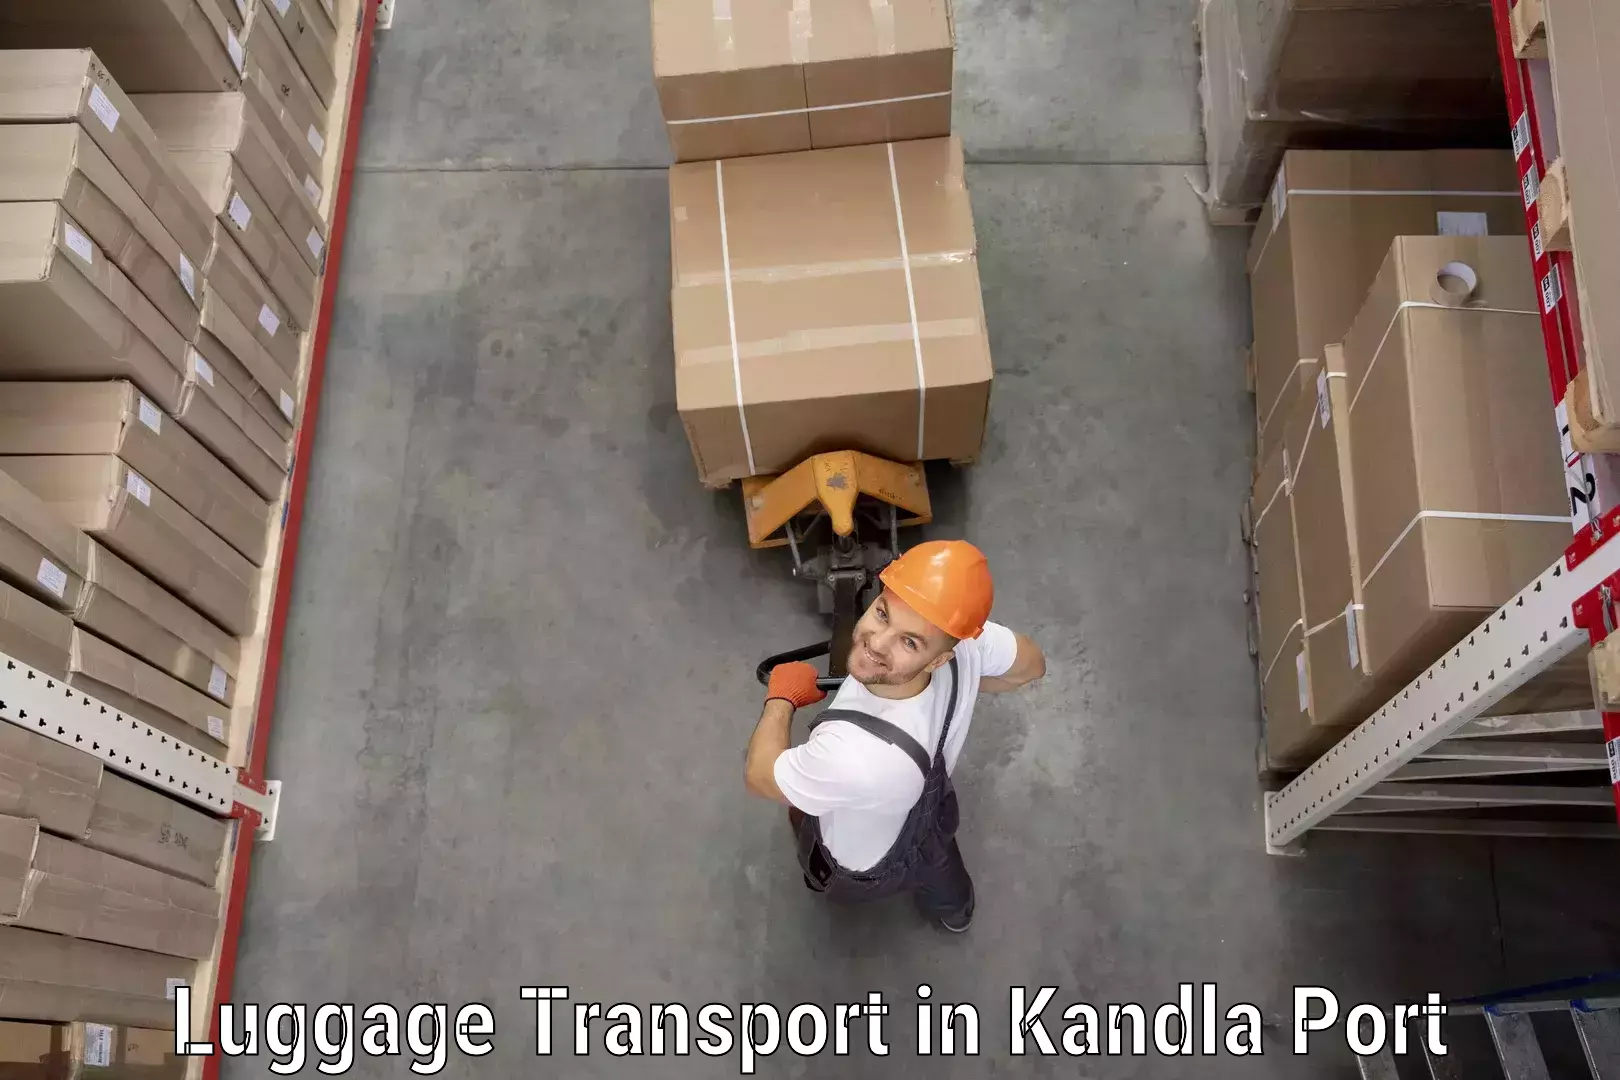 Same day baggage transport in Kandla Port